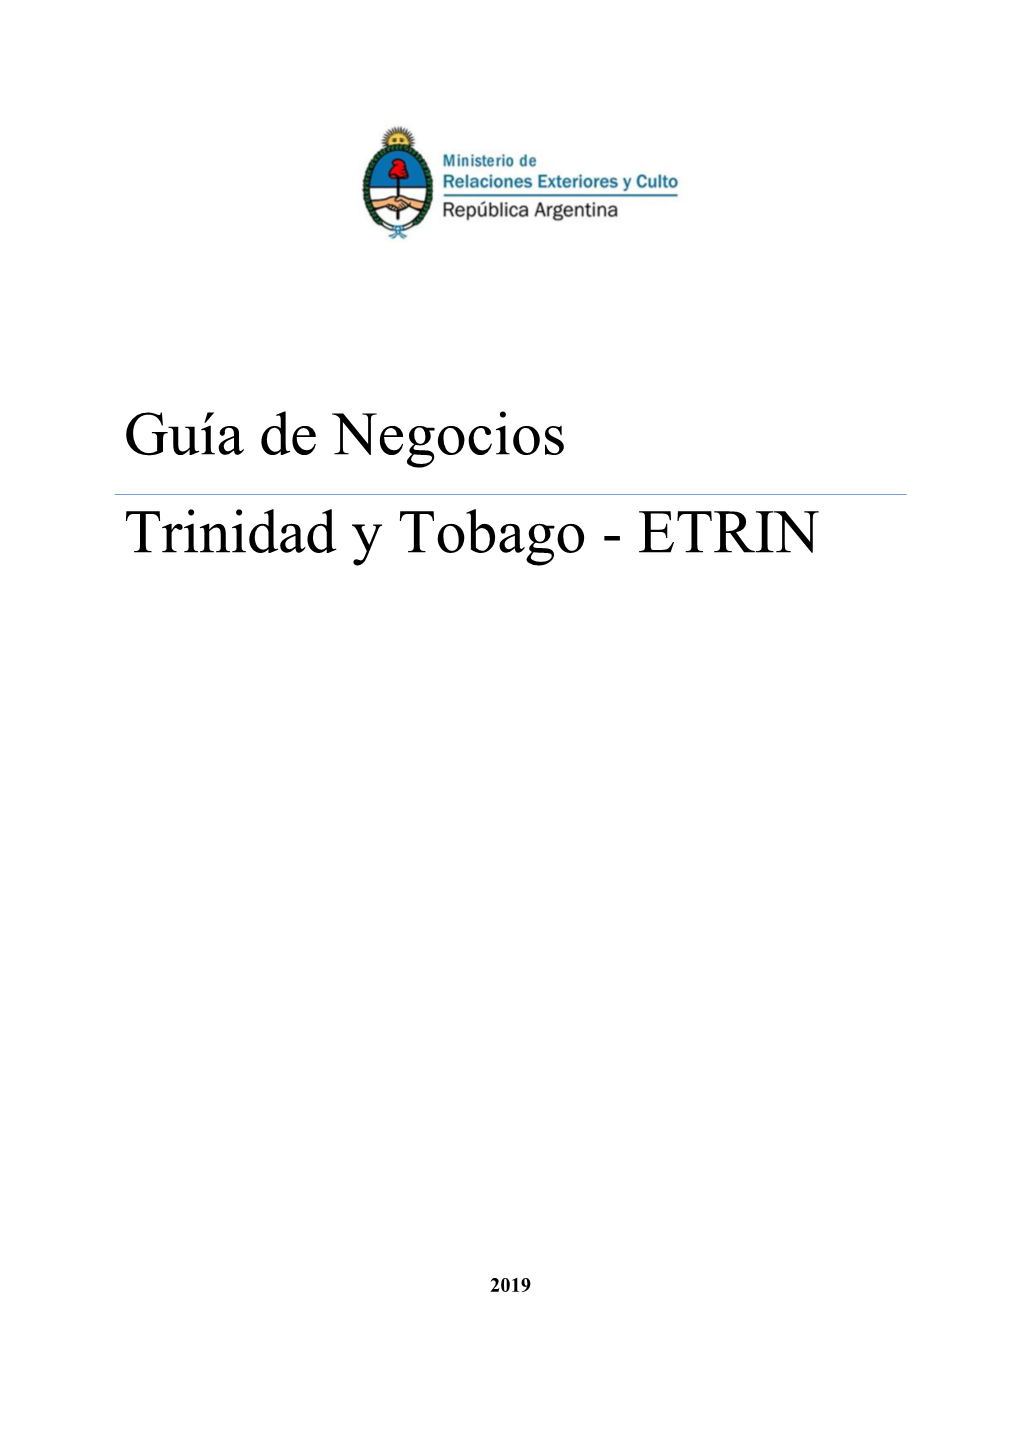 Guía De Negocios Trinidad Y Tobago - ETRIN